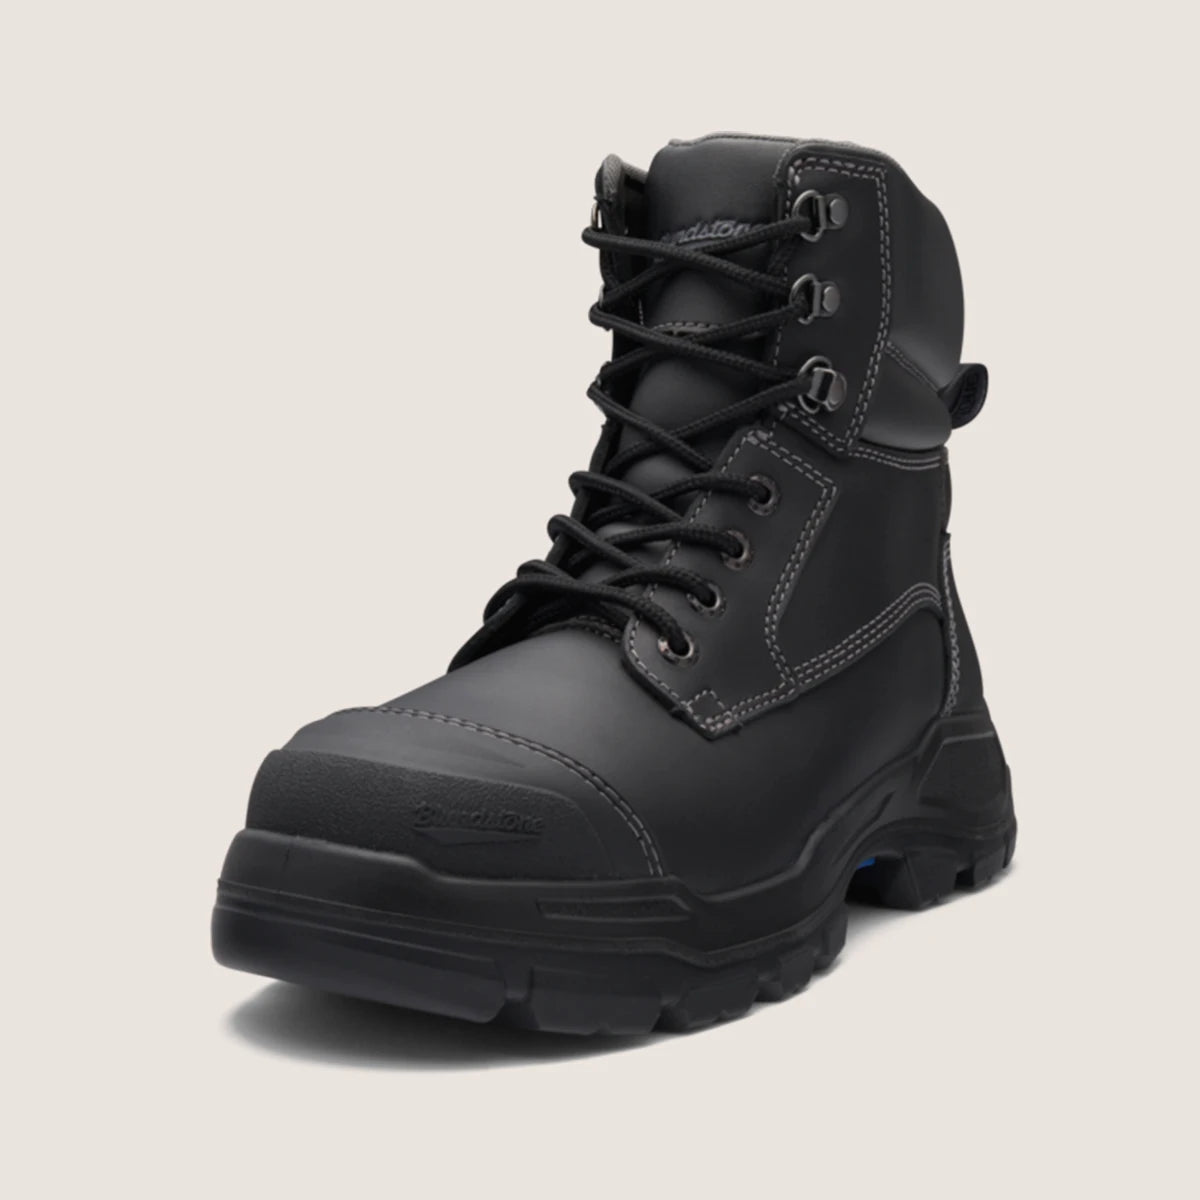 Blundstone 9061 Unisex RotoFlex Safety Boots - Black